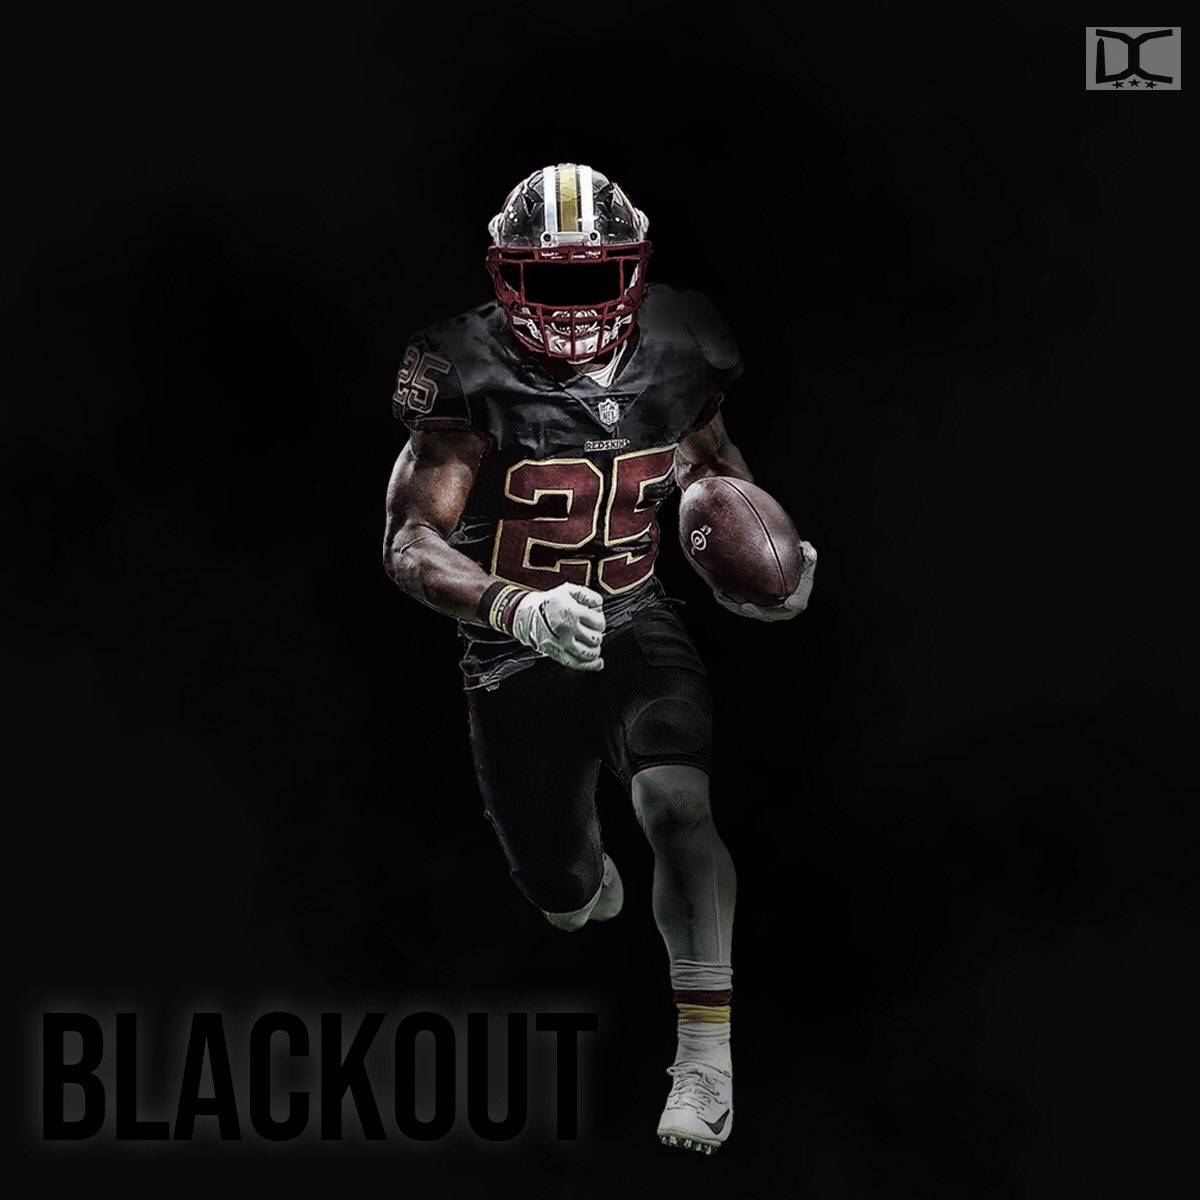 redskins blackout jersey